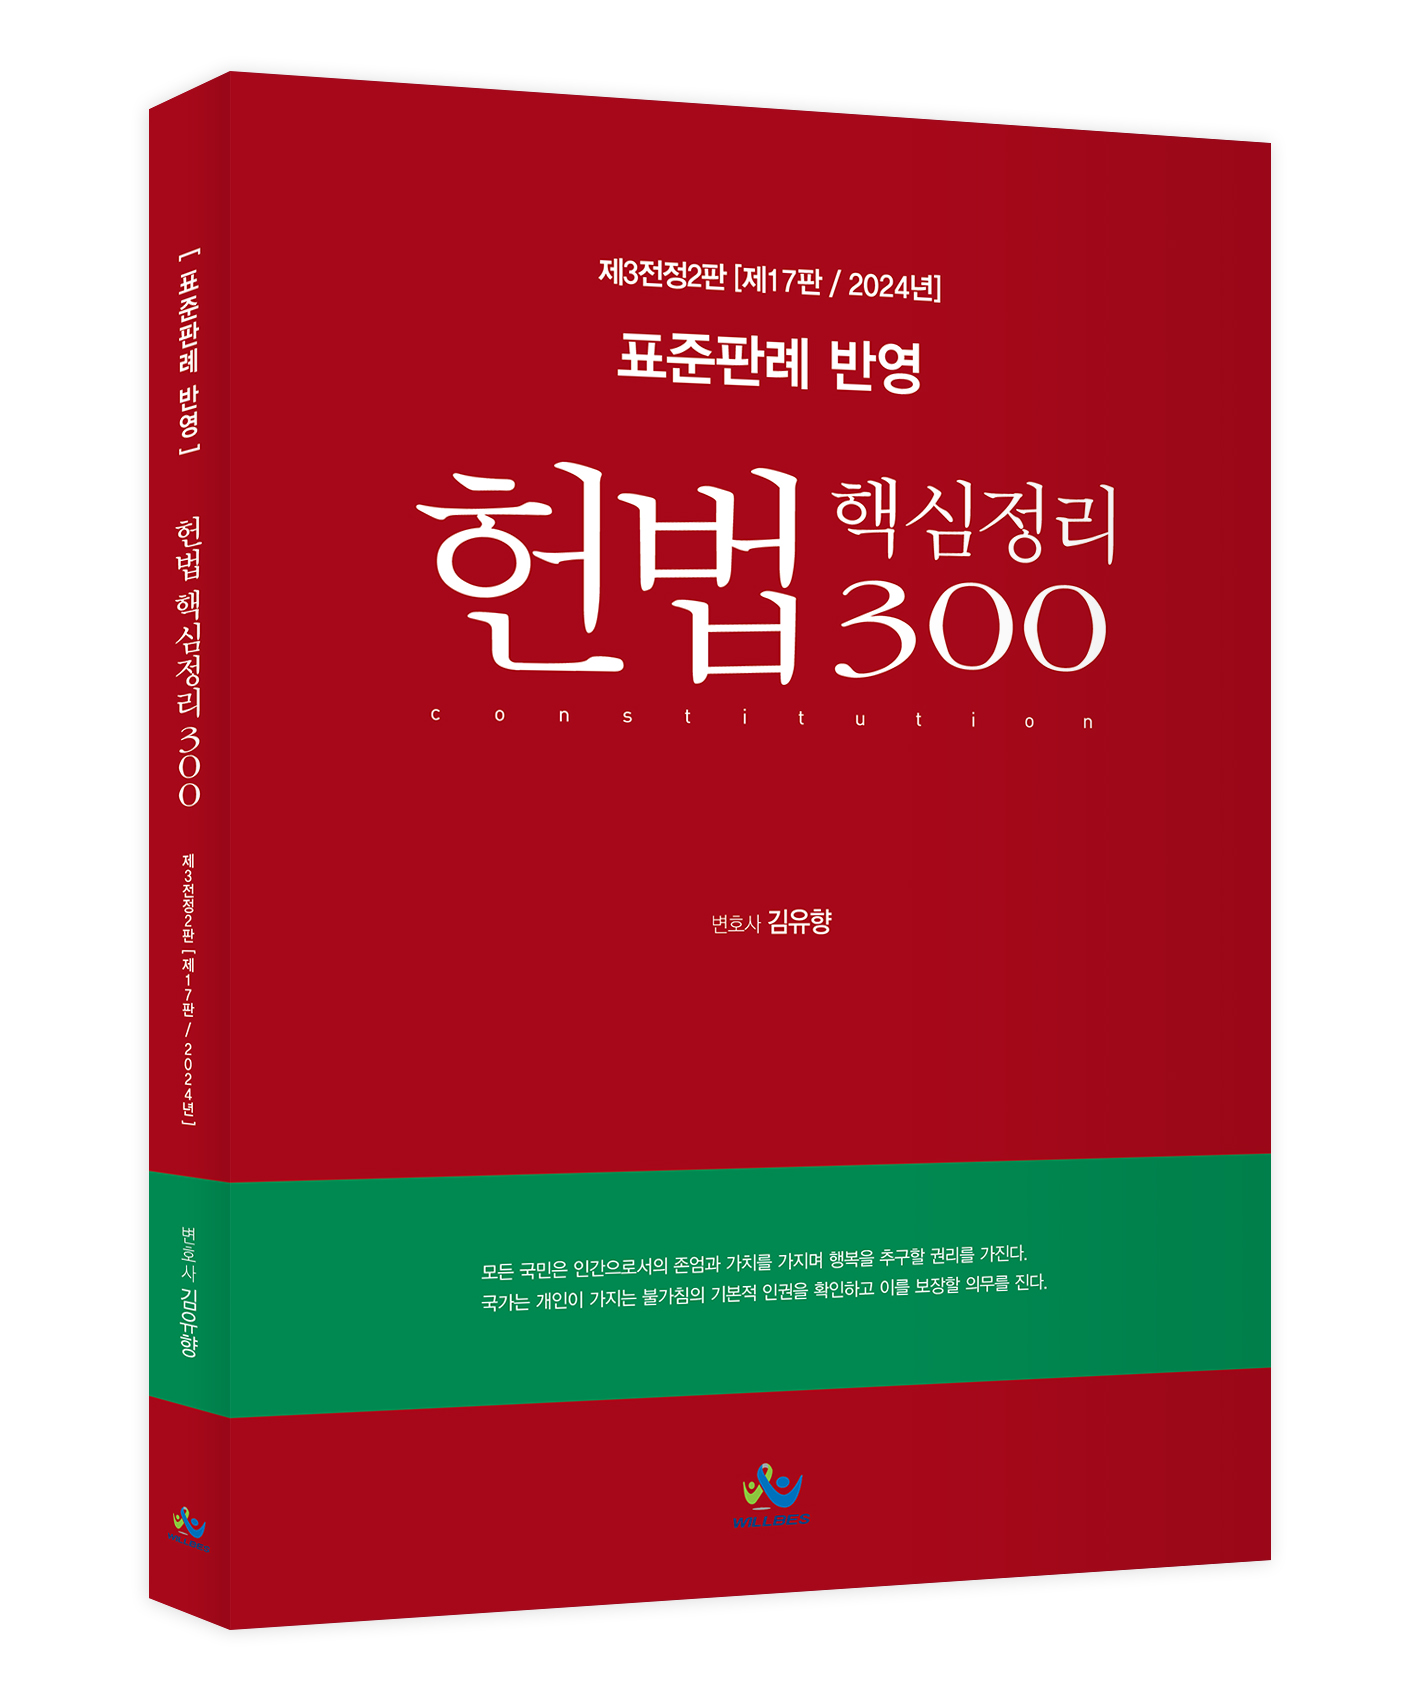 표준판례 반영 헌법 핵심정리 300(제3전정2판,제17판,2024년판)